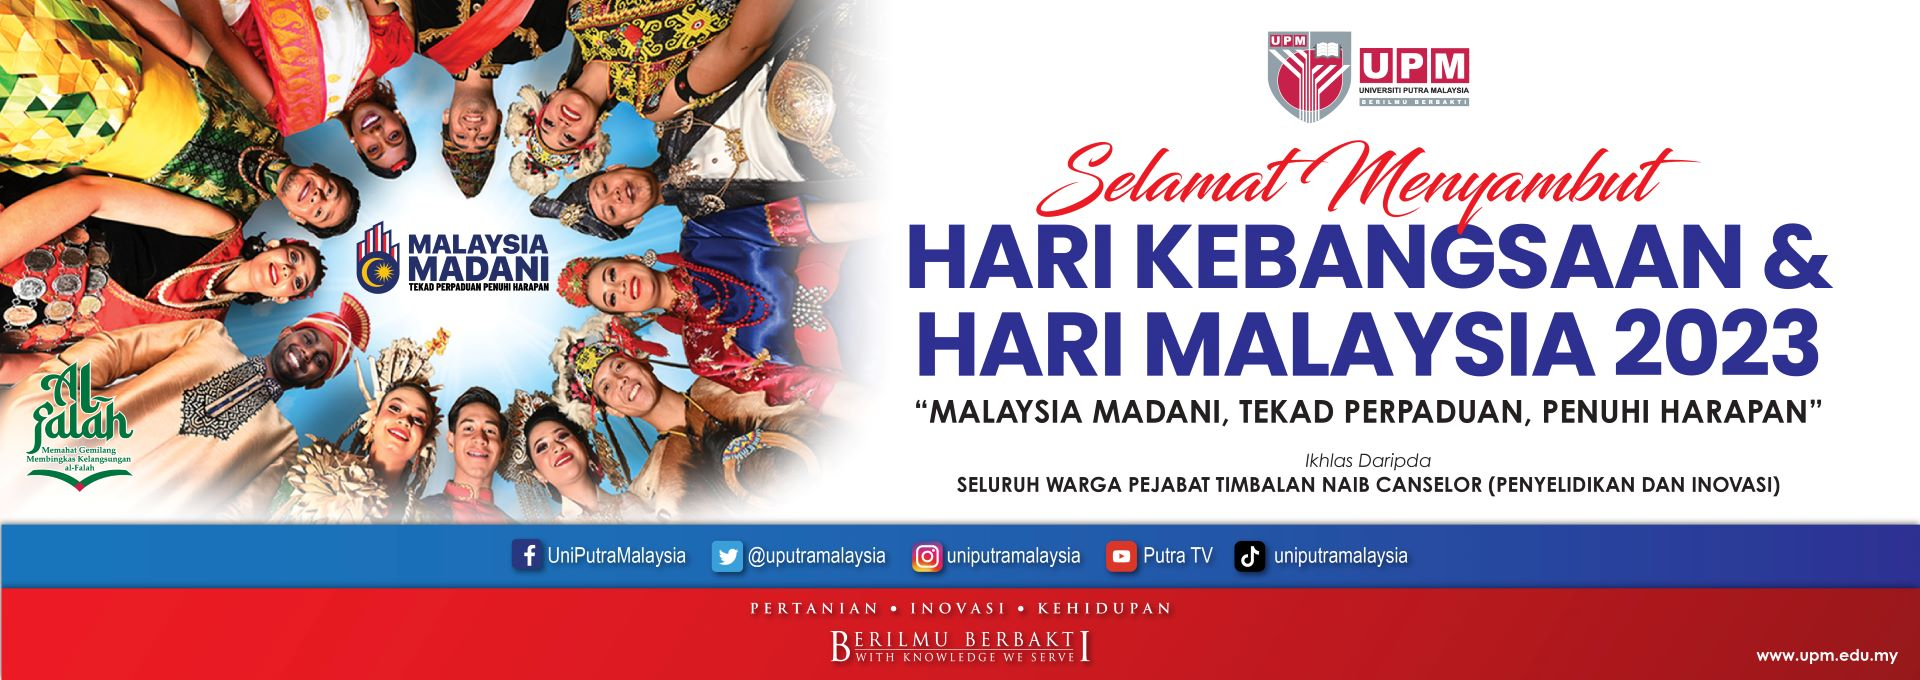 HARI KEBANGSAAN & HARI MALAYSIA 2023